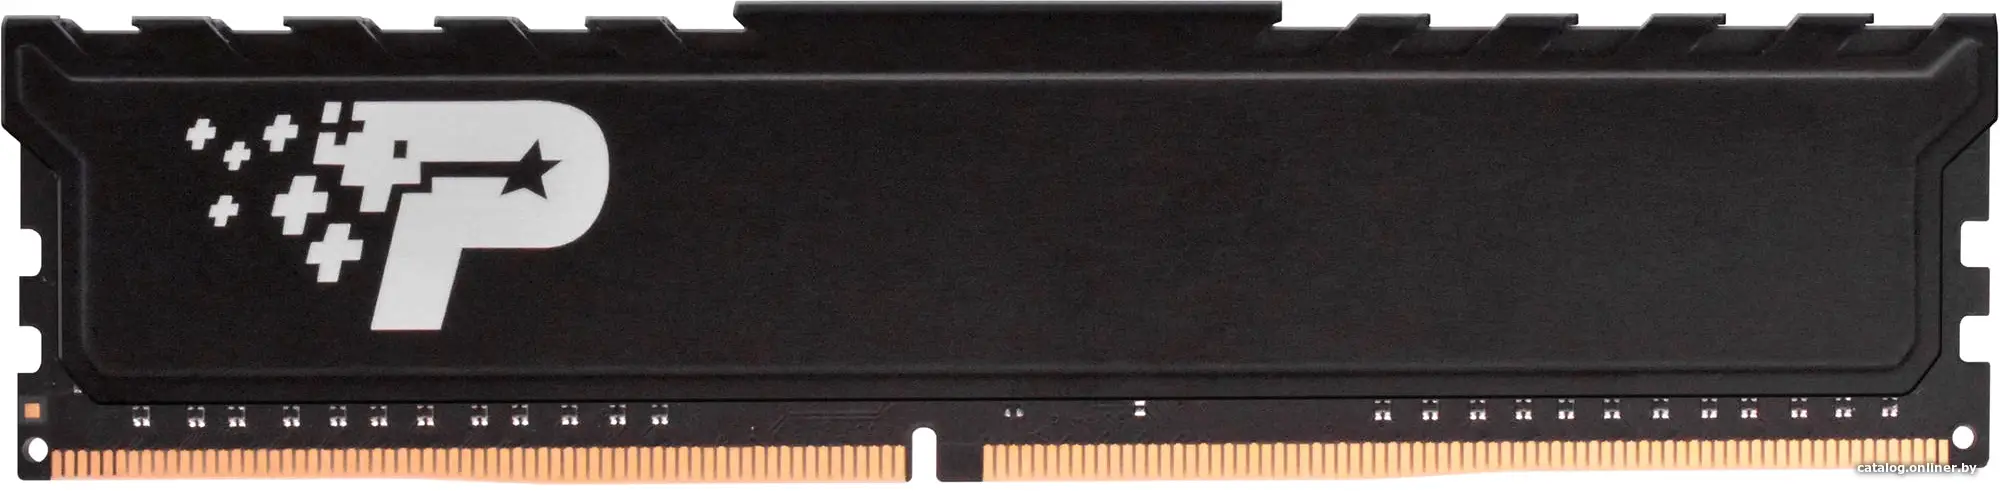 Купить Память DDR4 32Gb PC4-25600 Patriot Signature PSP432G32002H1, цена, опт и розница